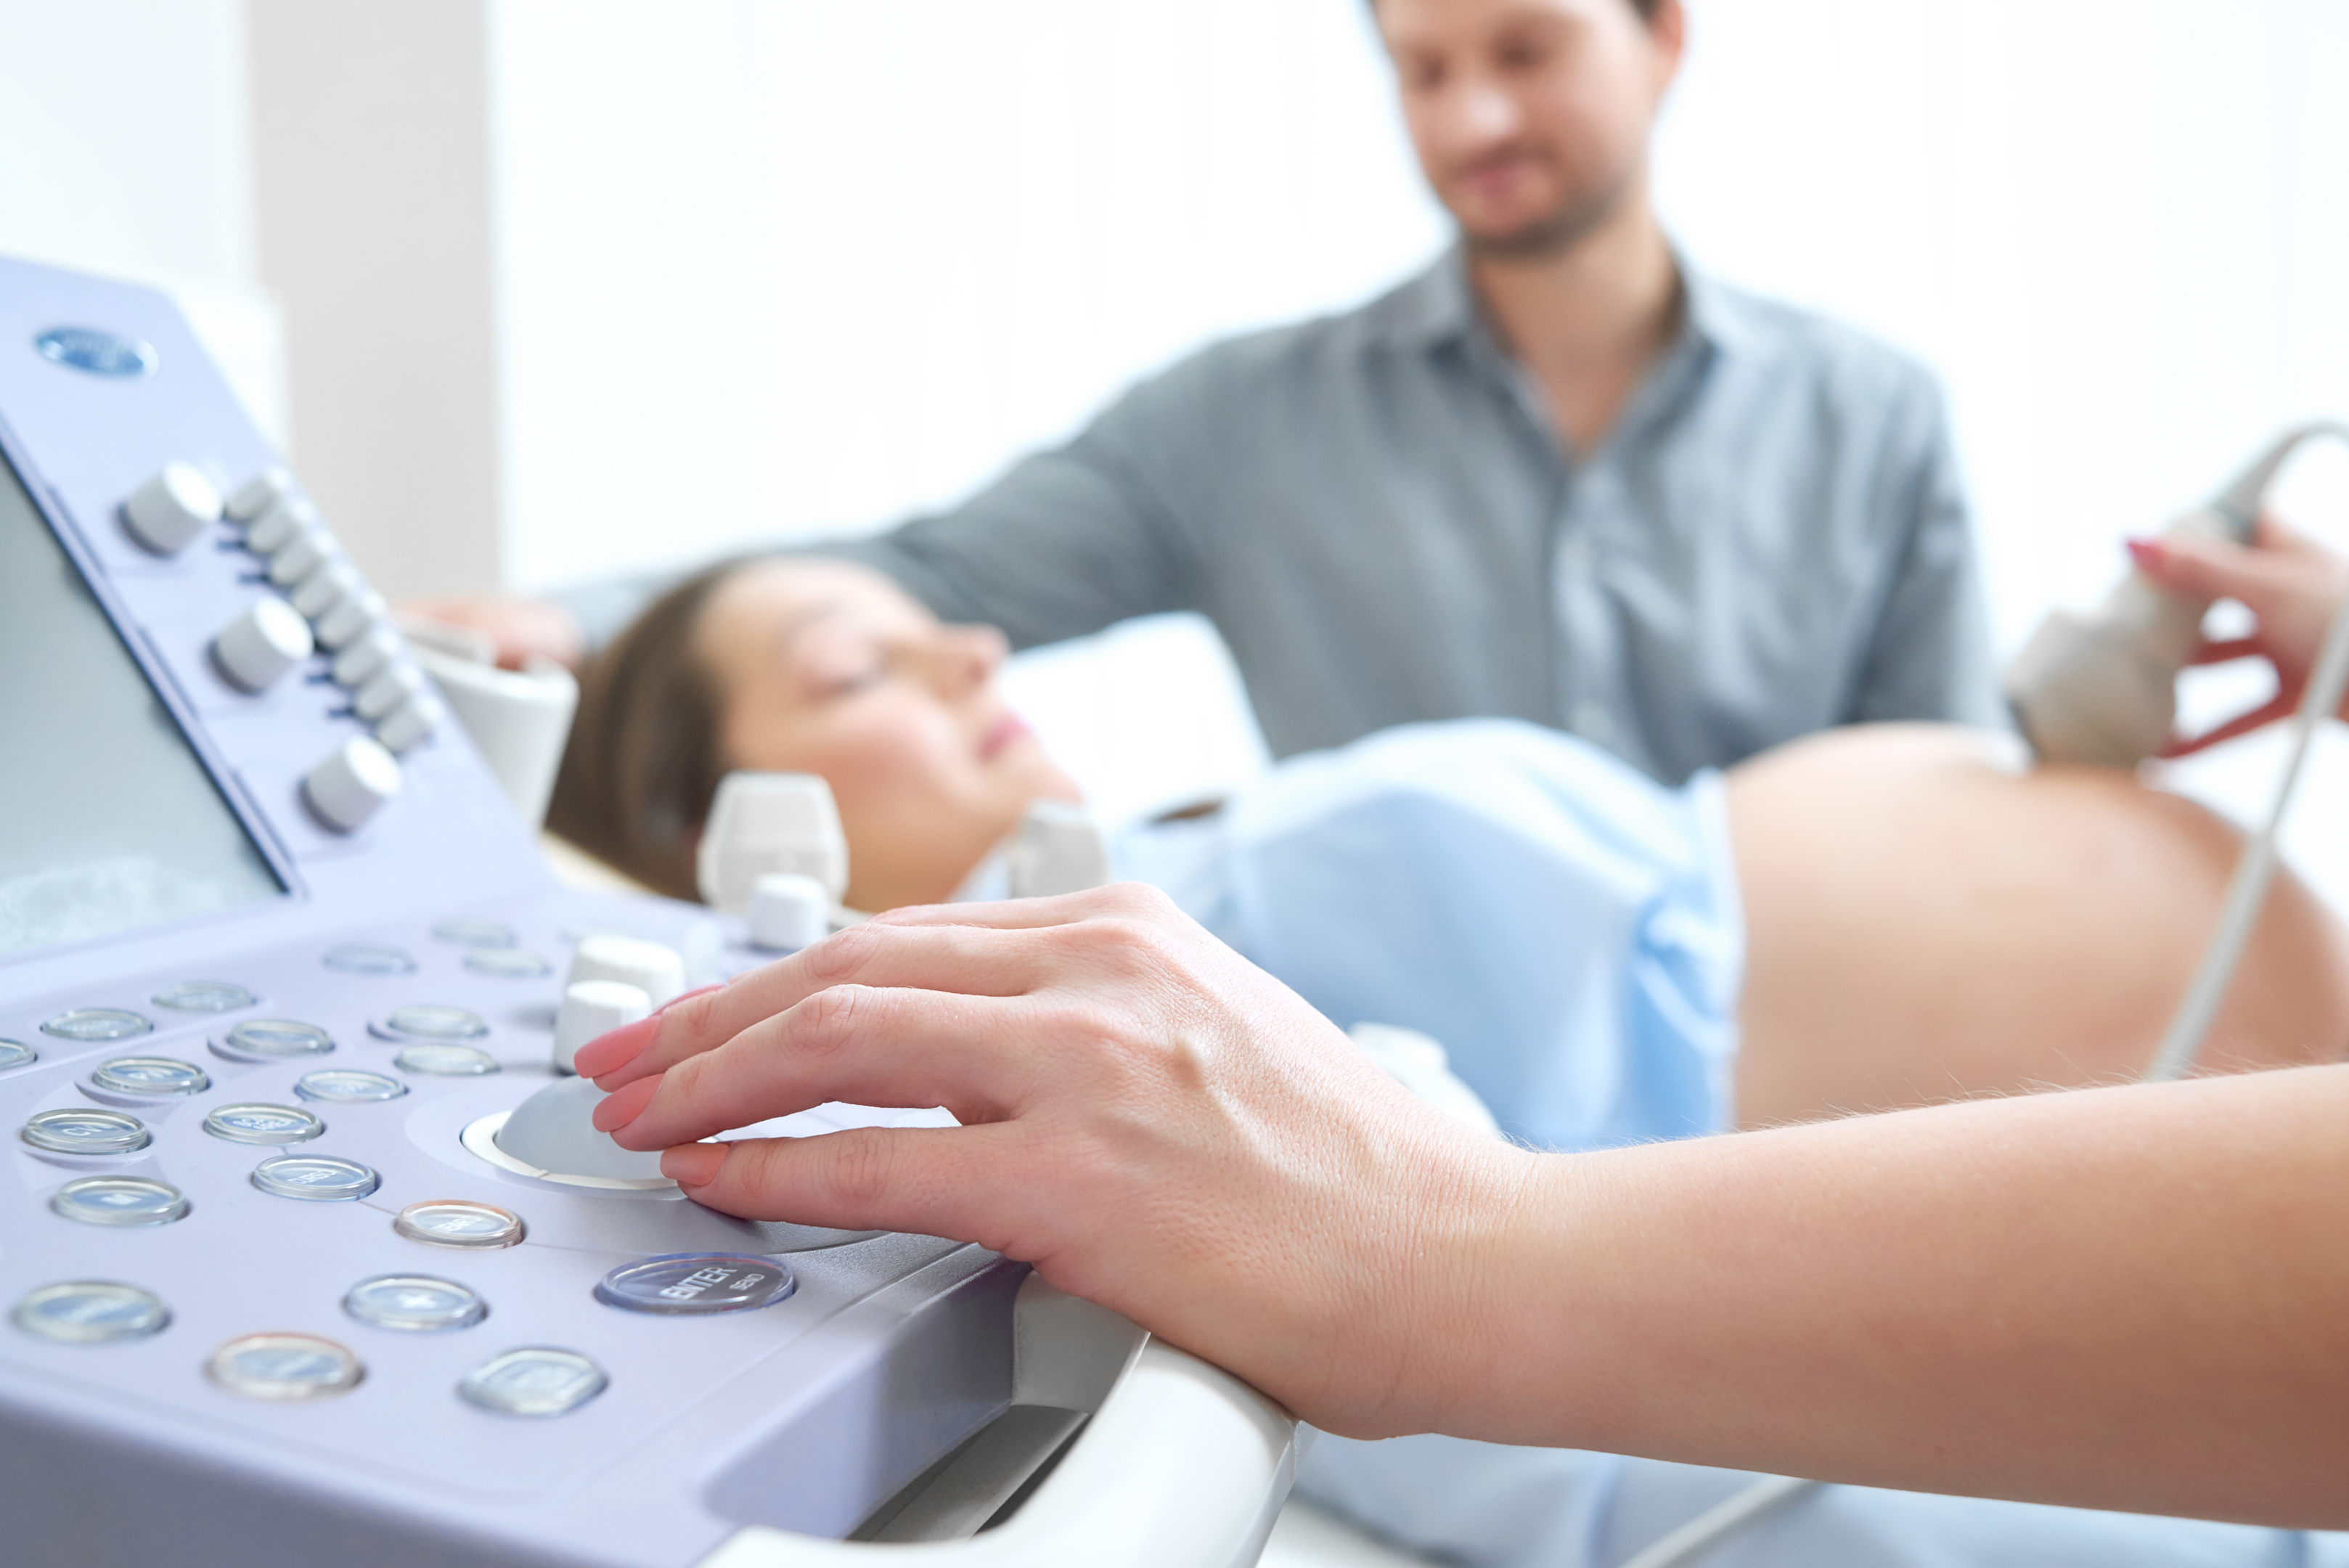 Mulher grávida realizando ultrassonografia. Fonte: Freepik